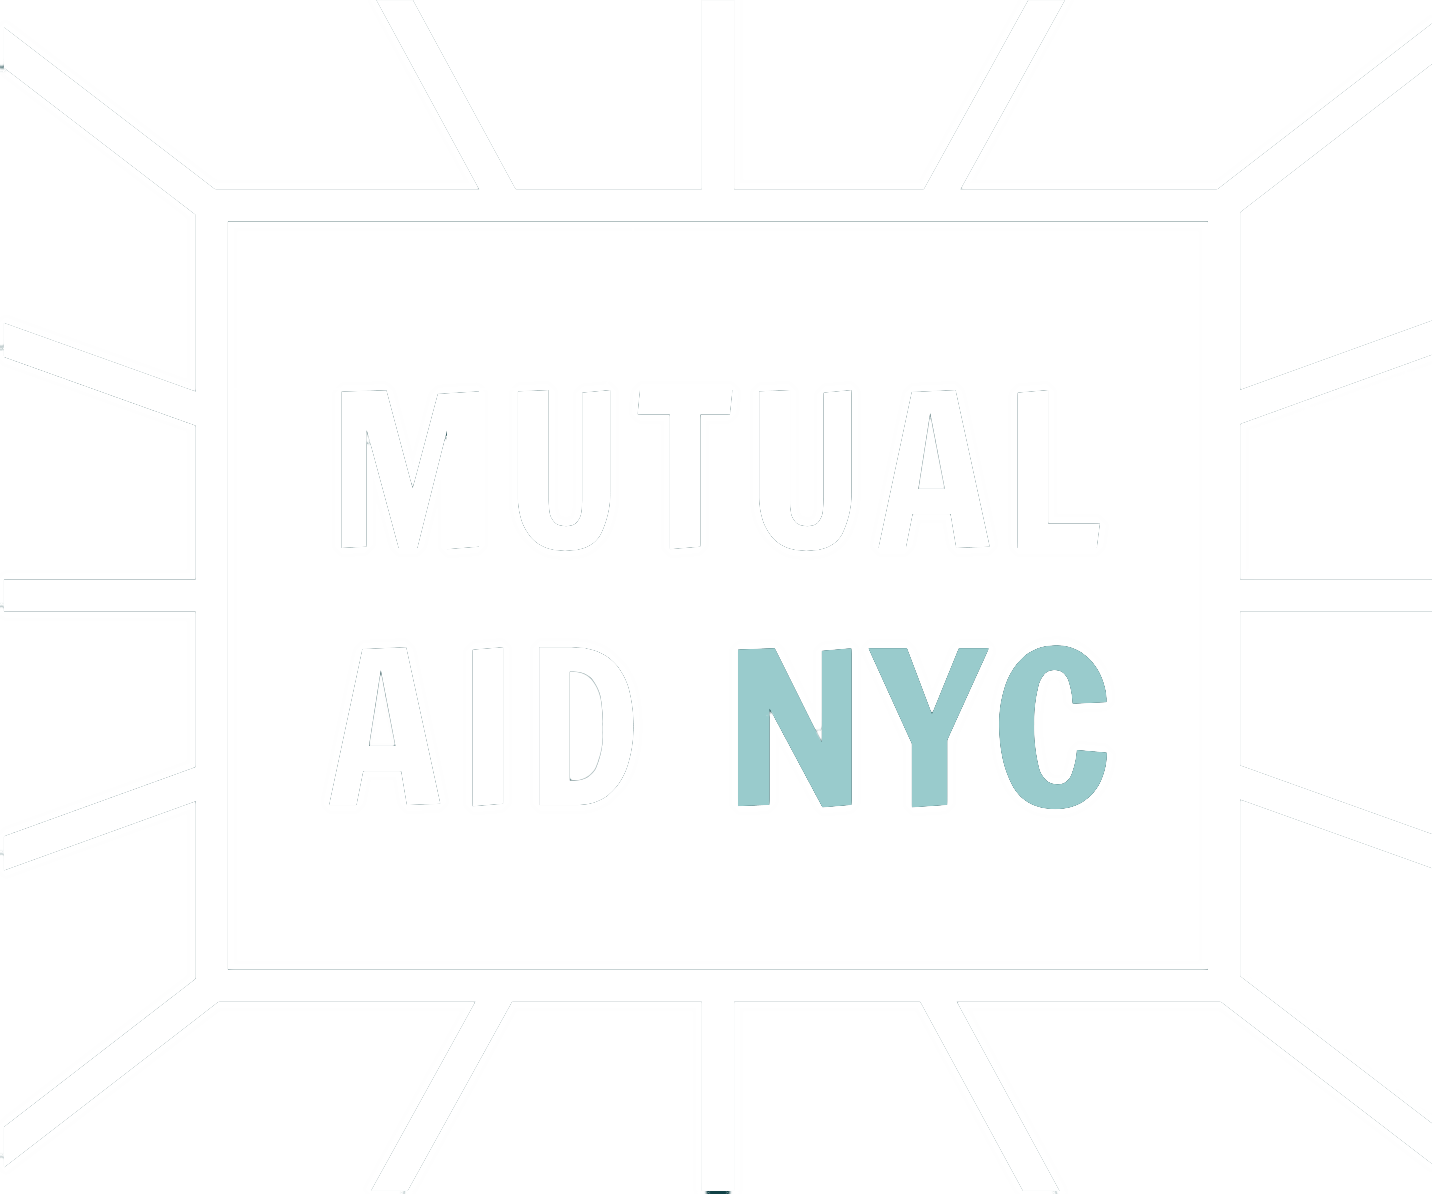 Mutual Aid NYC